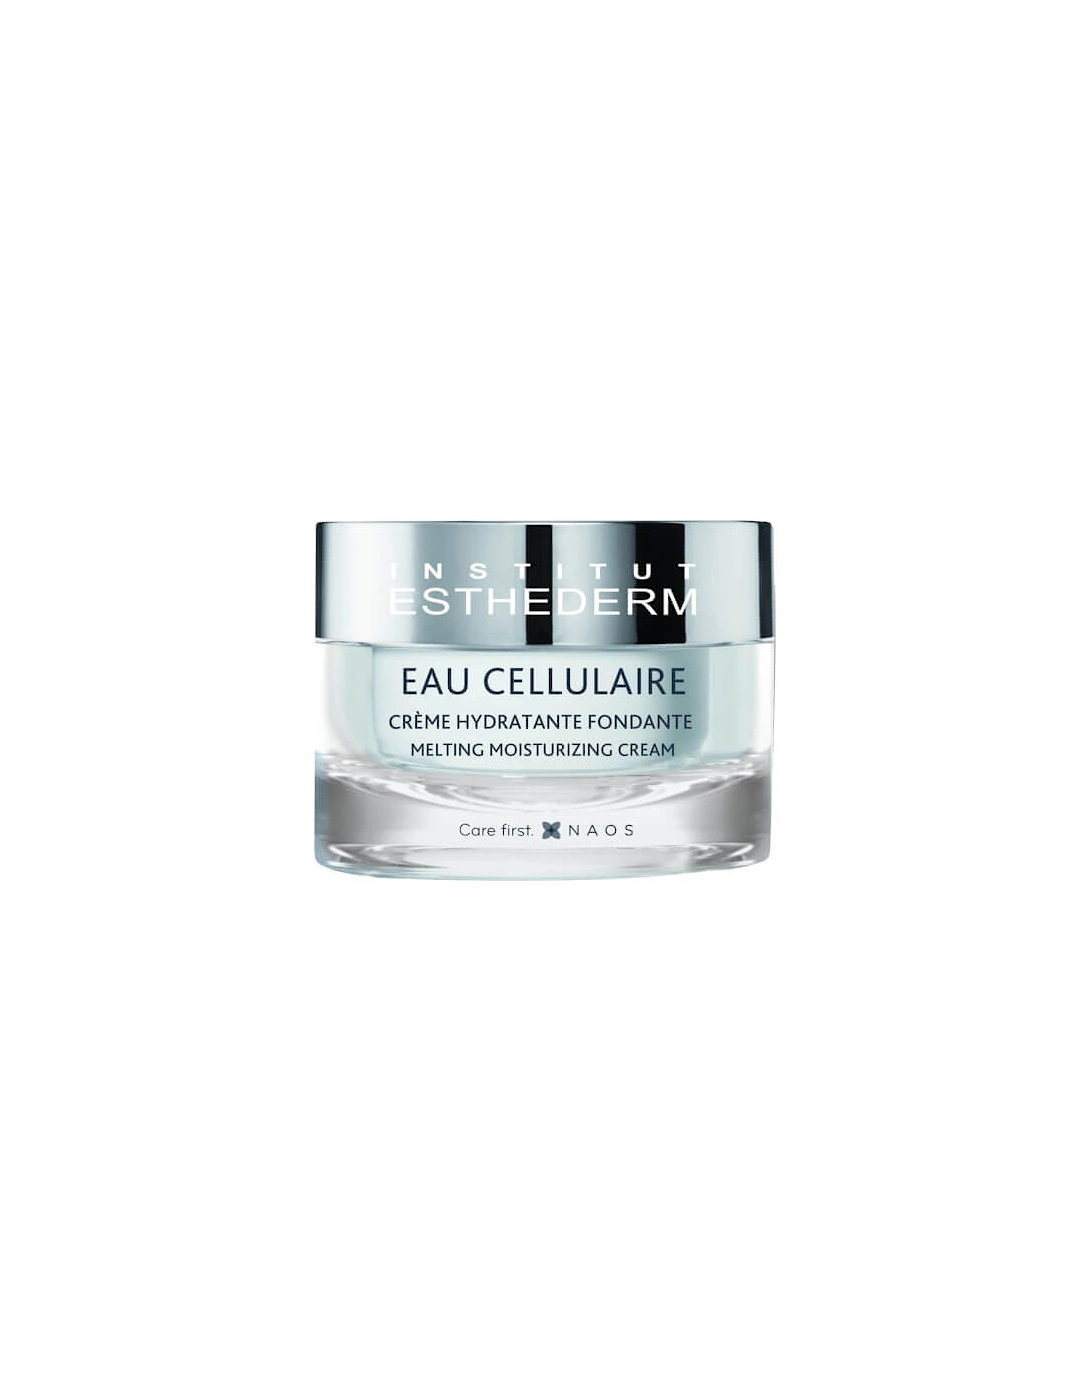 Cellular Water Cream 50ml - Institut Esthederm, 2 of 1